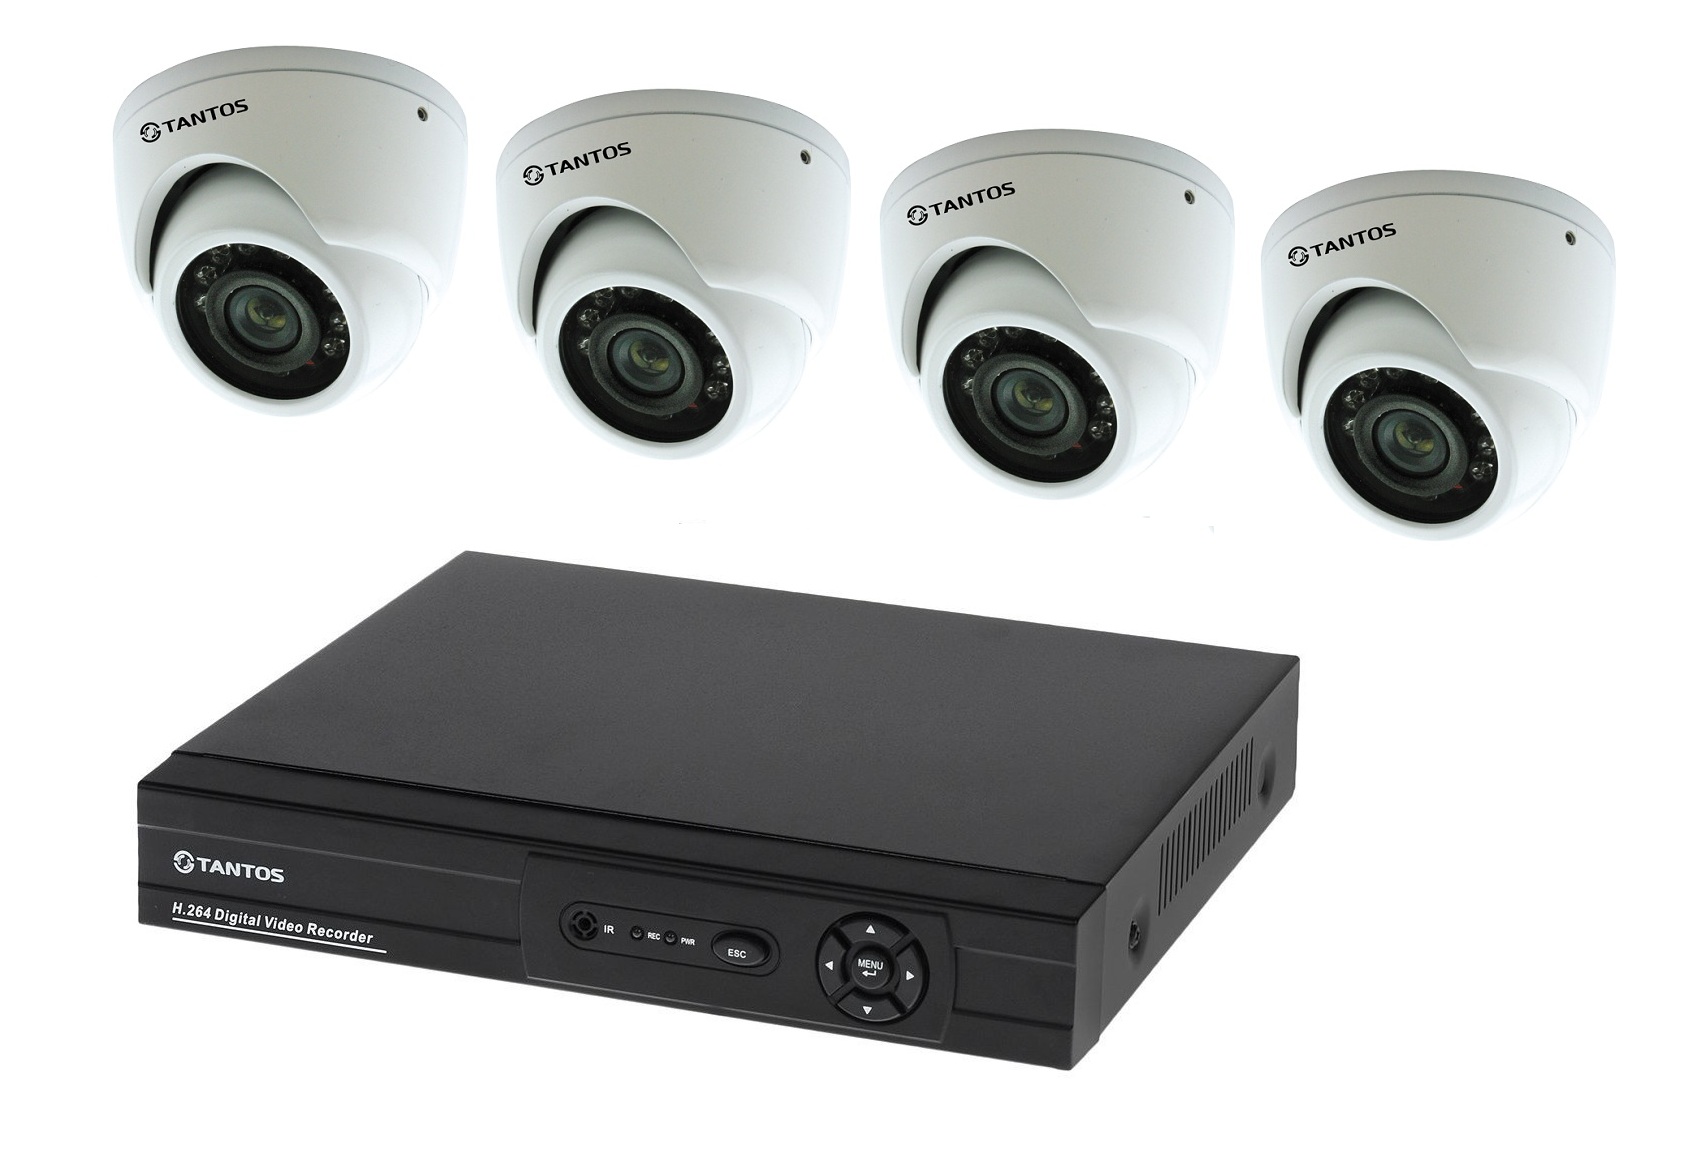 Регистраторы самары. Комплект видеонаблюдения "tantos Страж-4". Камера видеонаблюдения XPX комплект н.264. Комплект видеонаблюдения DVR 7204c1 с 4 видеокамерами. Комплект видеонаблюдения установи сам Sony 13кам.